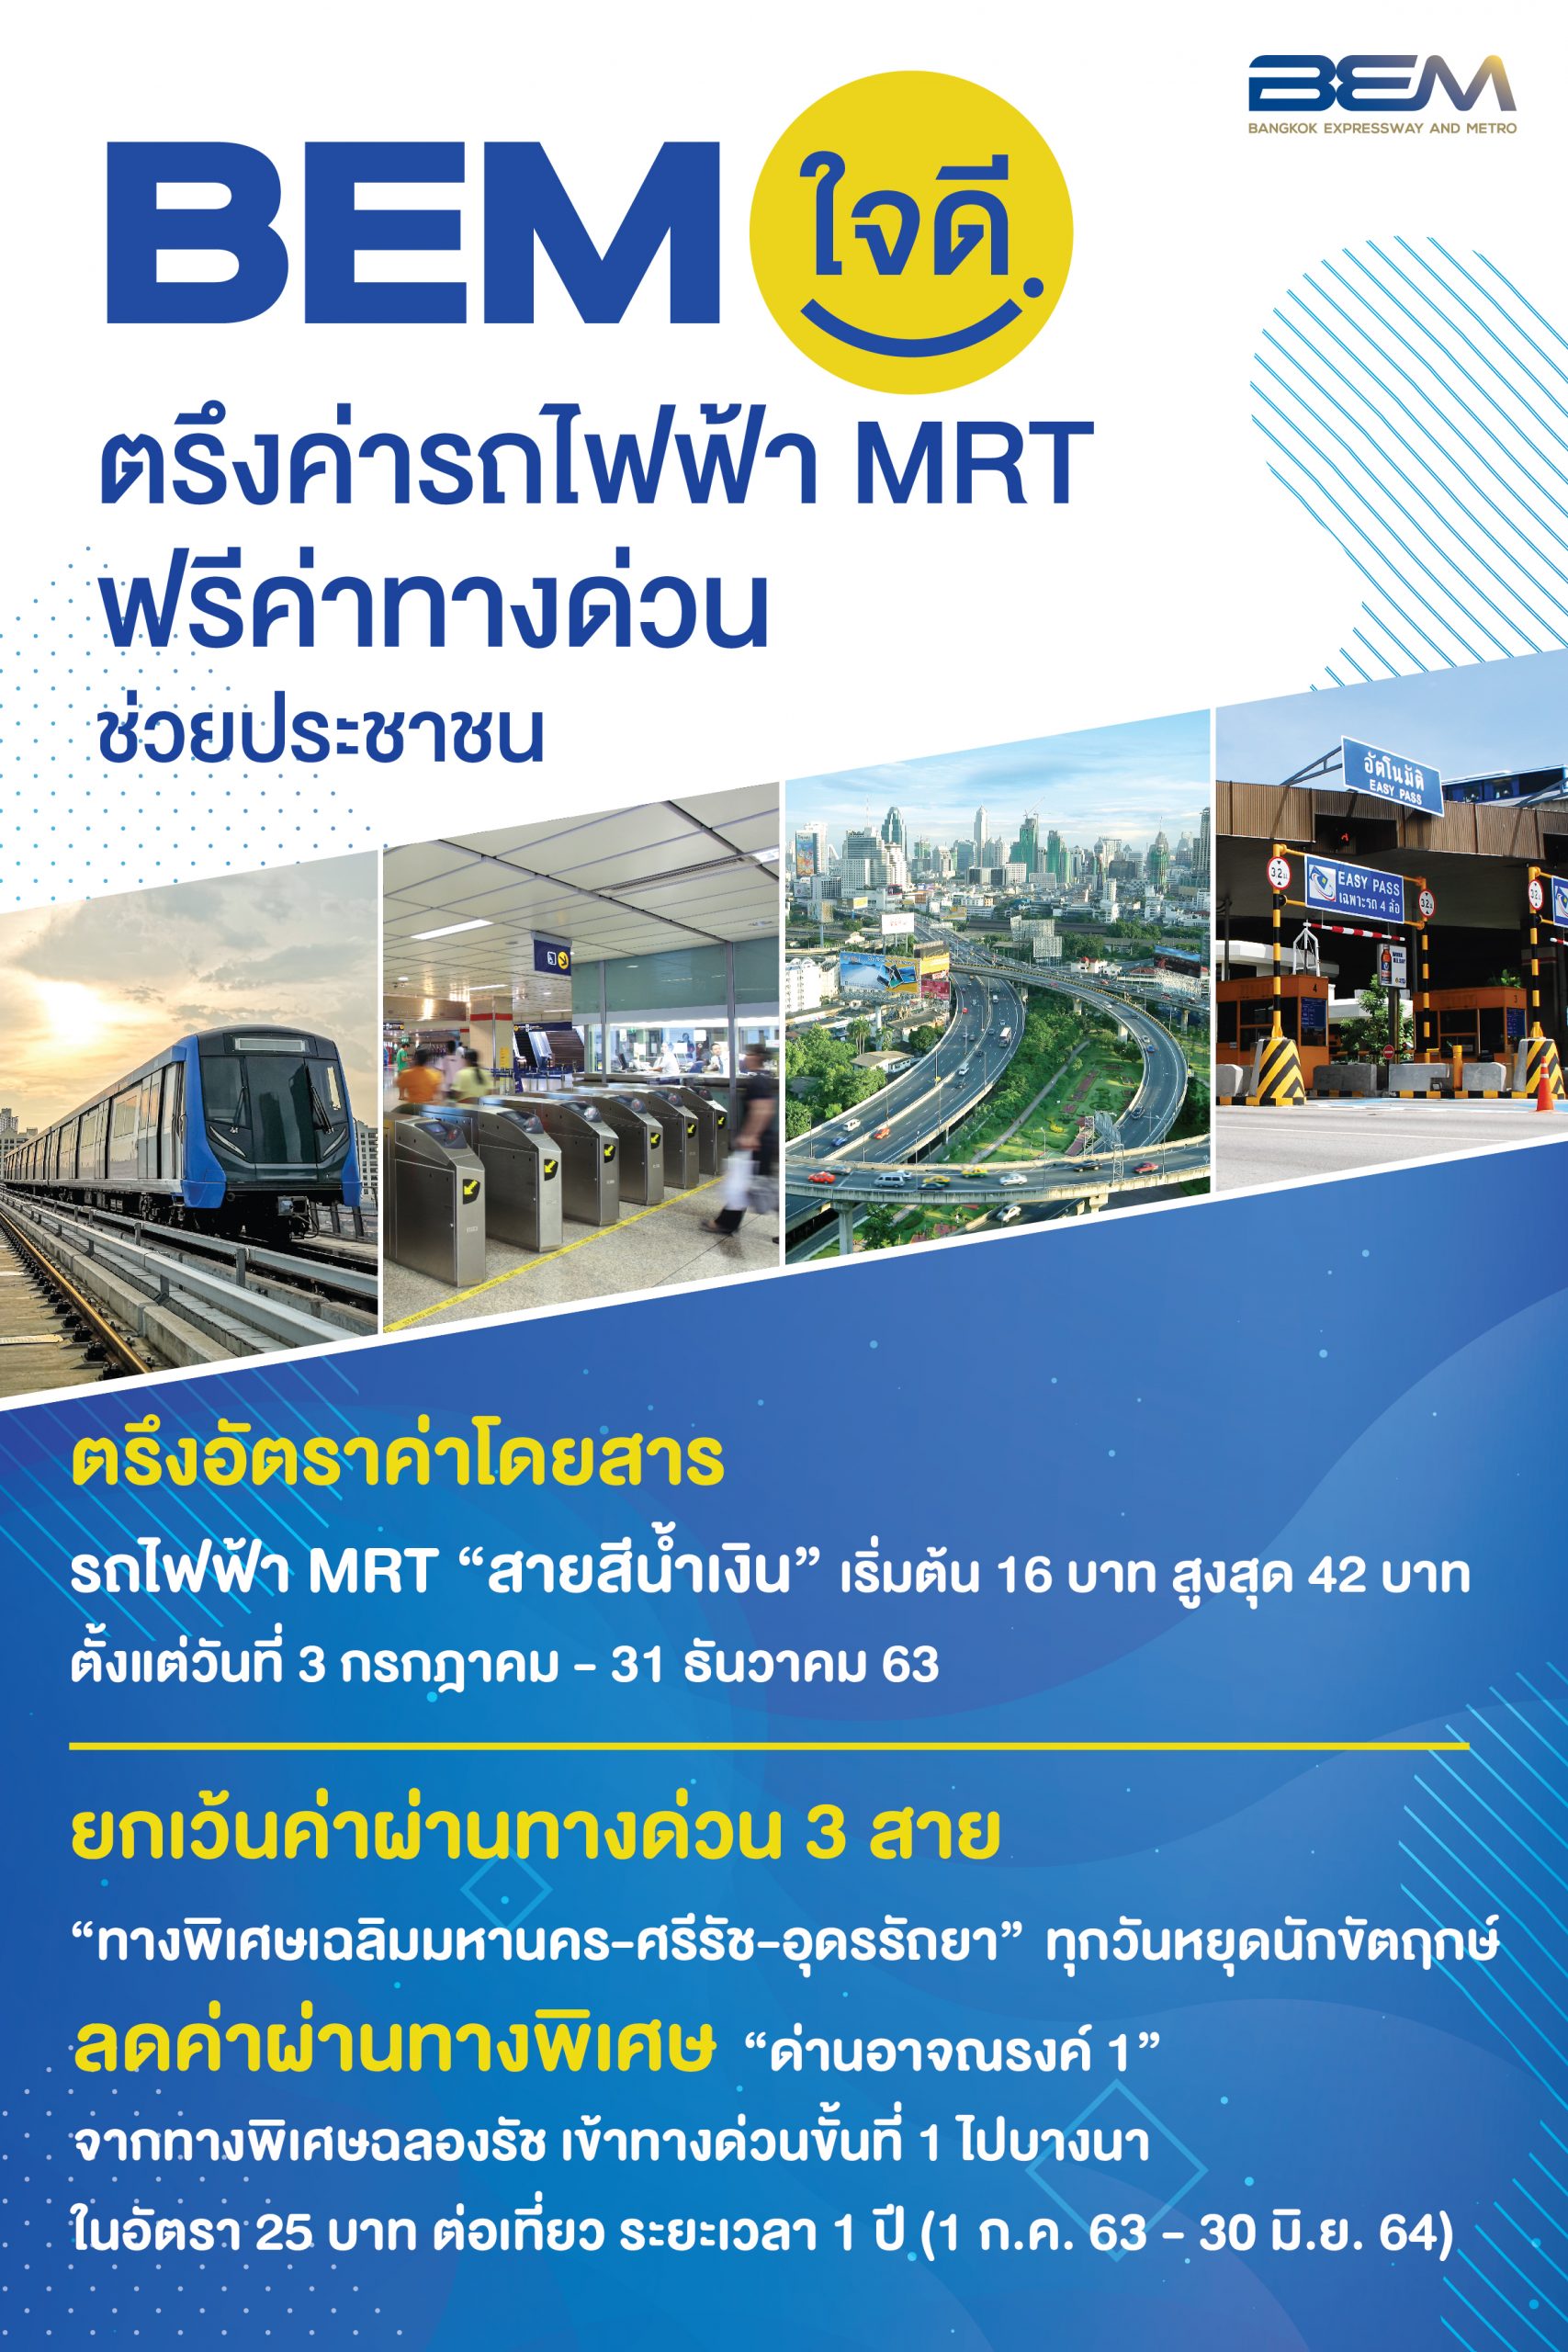 BEM ใจดี ตรึงค่ารถไฟฟ้า MRT ฟรีค่าทางด่วน แจกหน้ากากผ้าฟรี 1 ล้านชิ้น ช่วยประชาชน